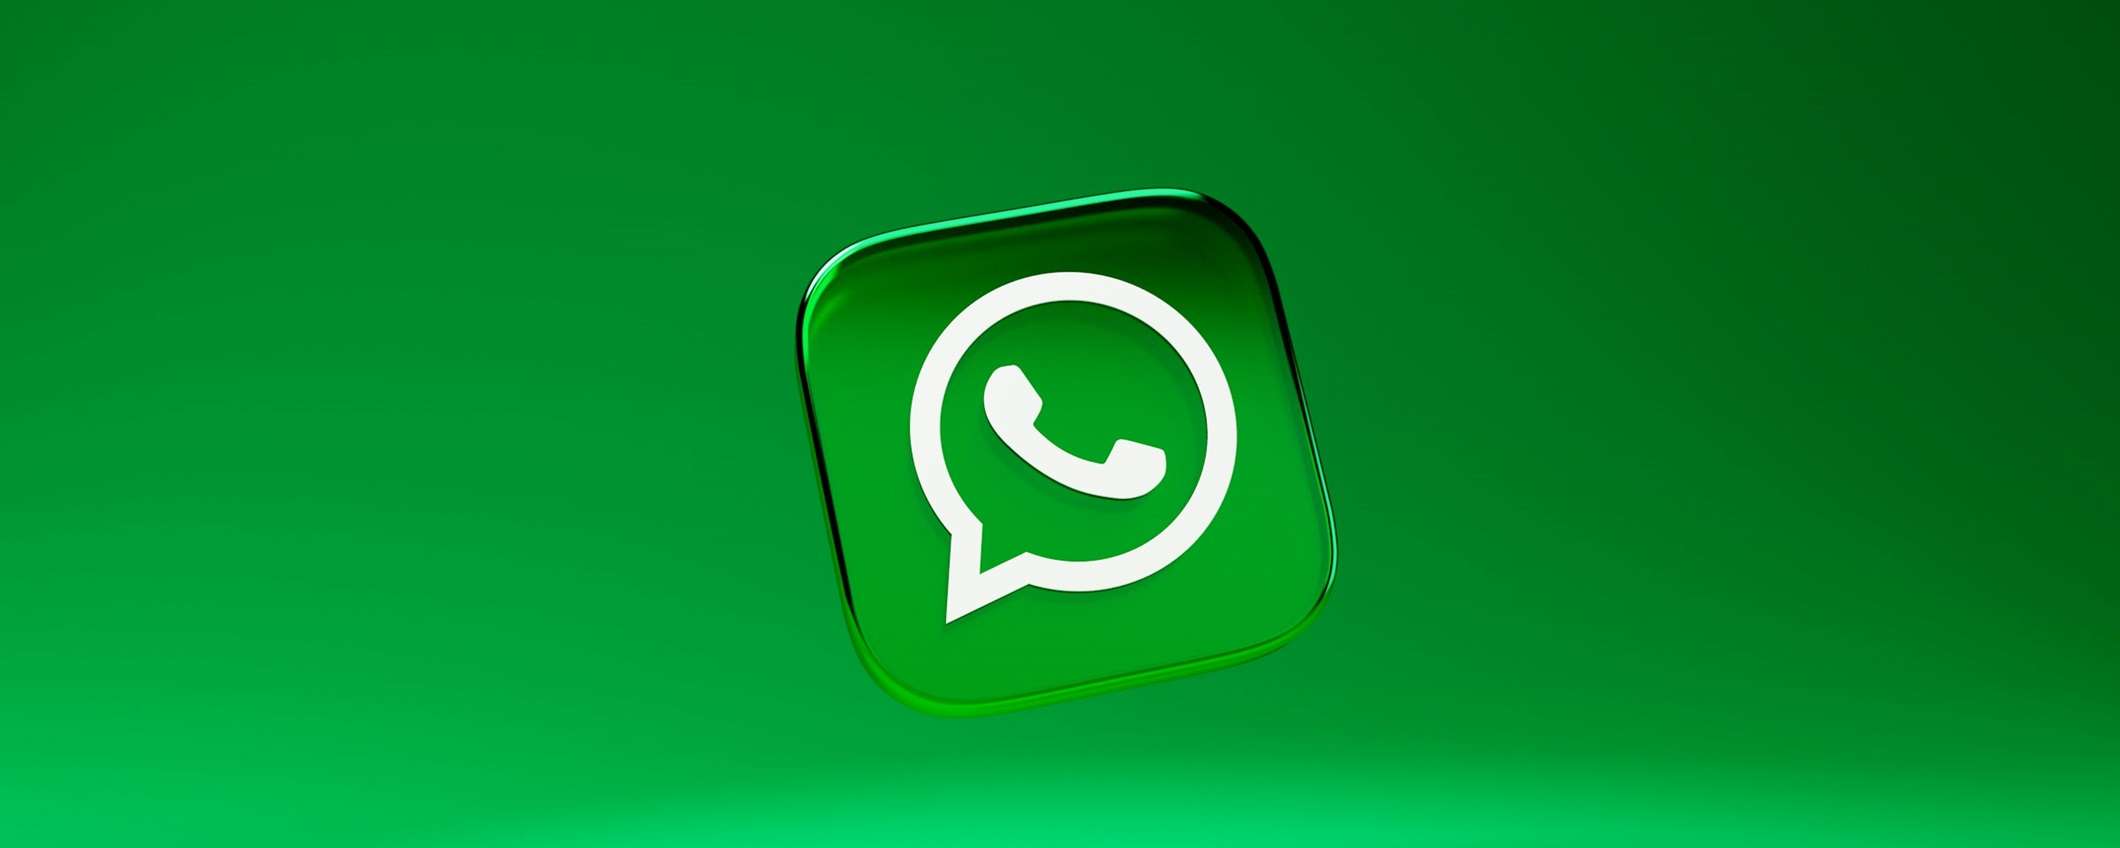 Come creare eventi per una community su Whatsapp